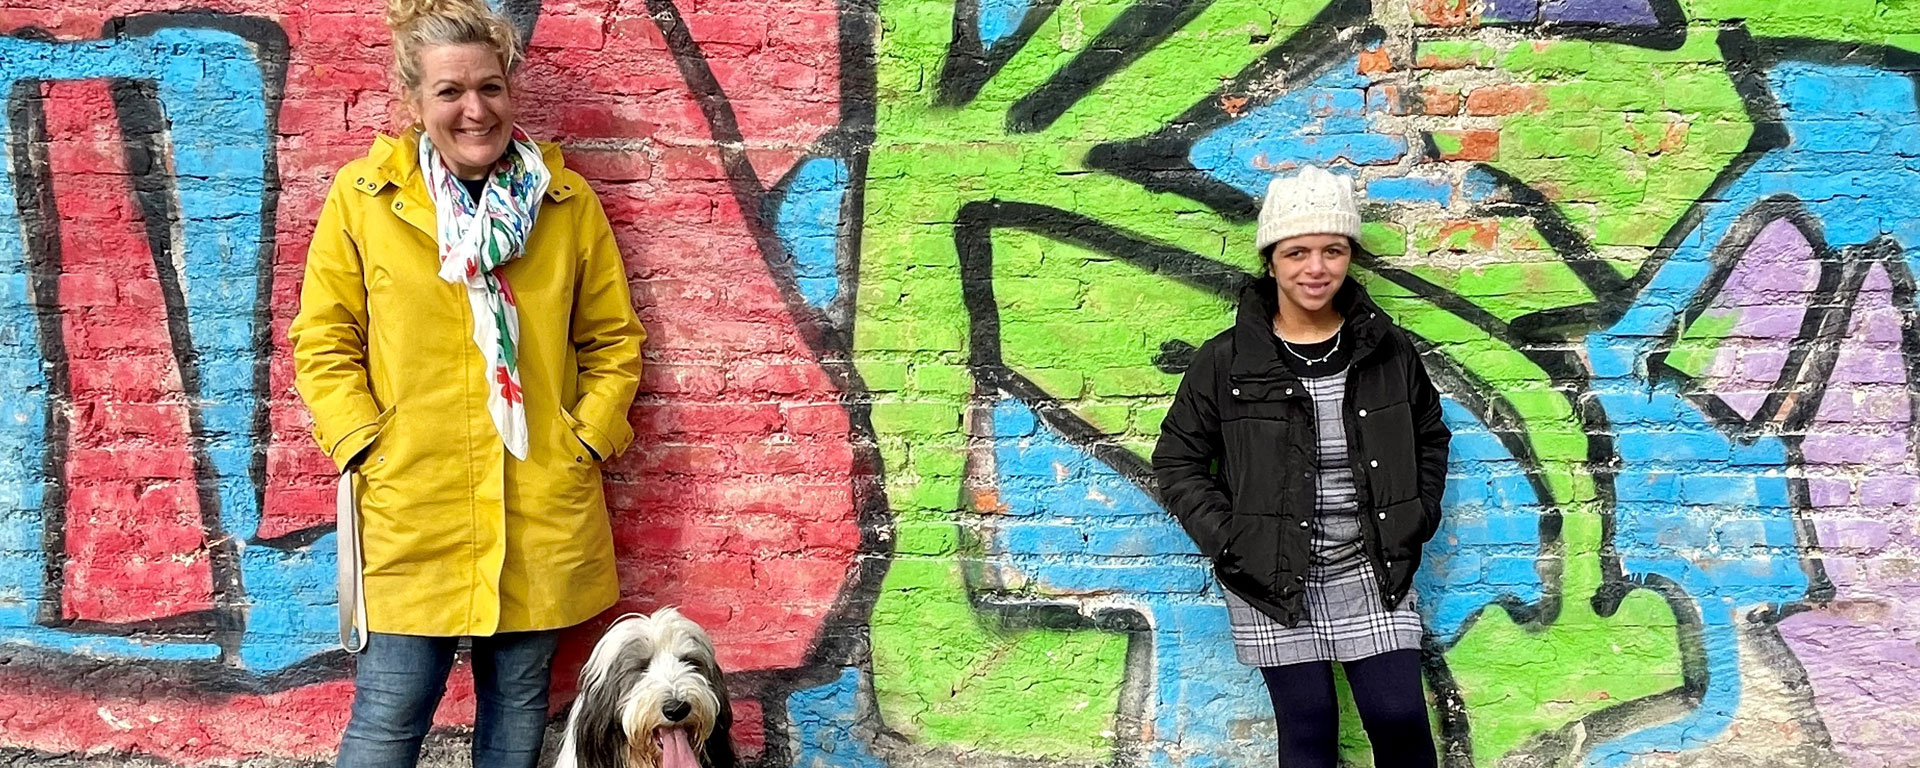 Eine Schülerin der Otto-Steiner-Schule steht zusammen mit einer Lehrerin und dem Schulhund vor einer Graffitiwand